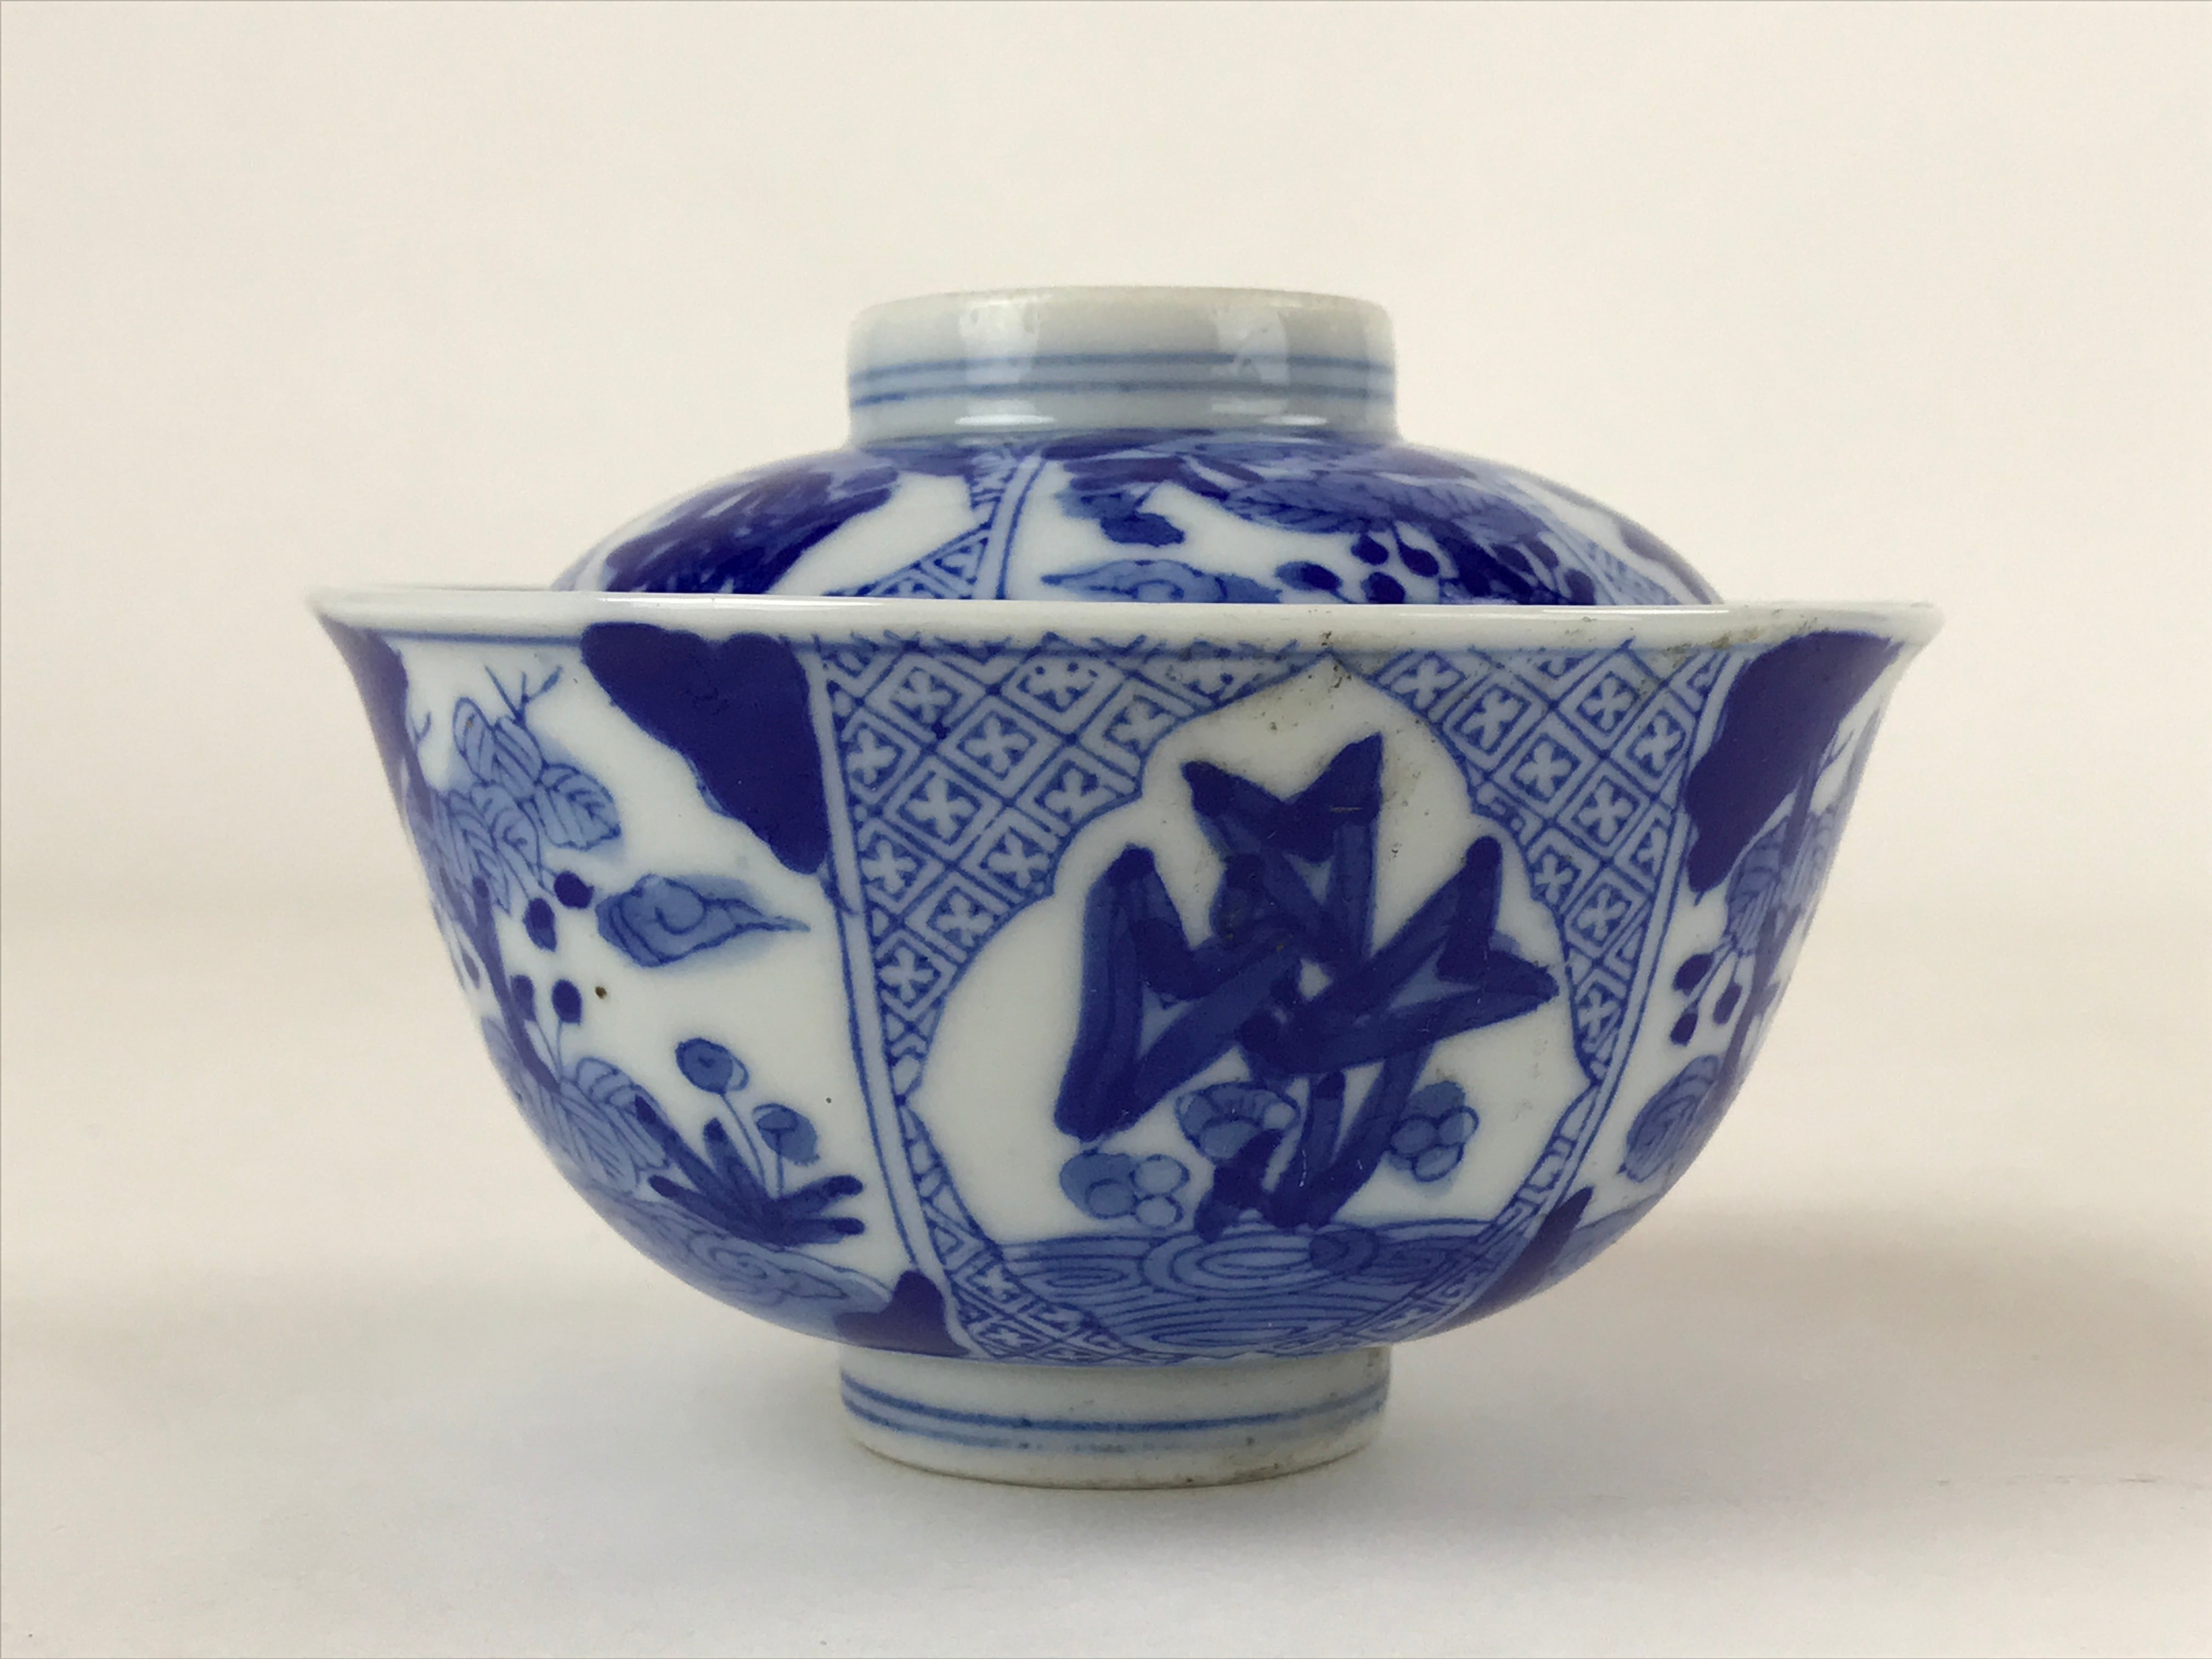 Japanese Ceramic Sometsuke Lidded Bowl Owan Vtg Pottery White Blue Floral PY580